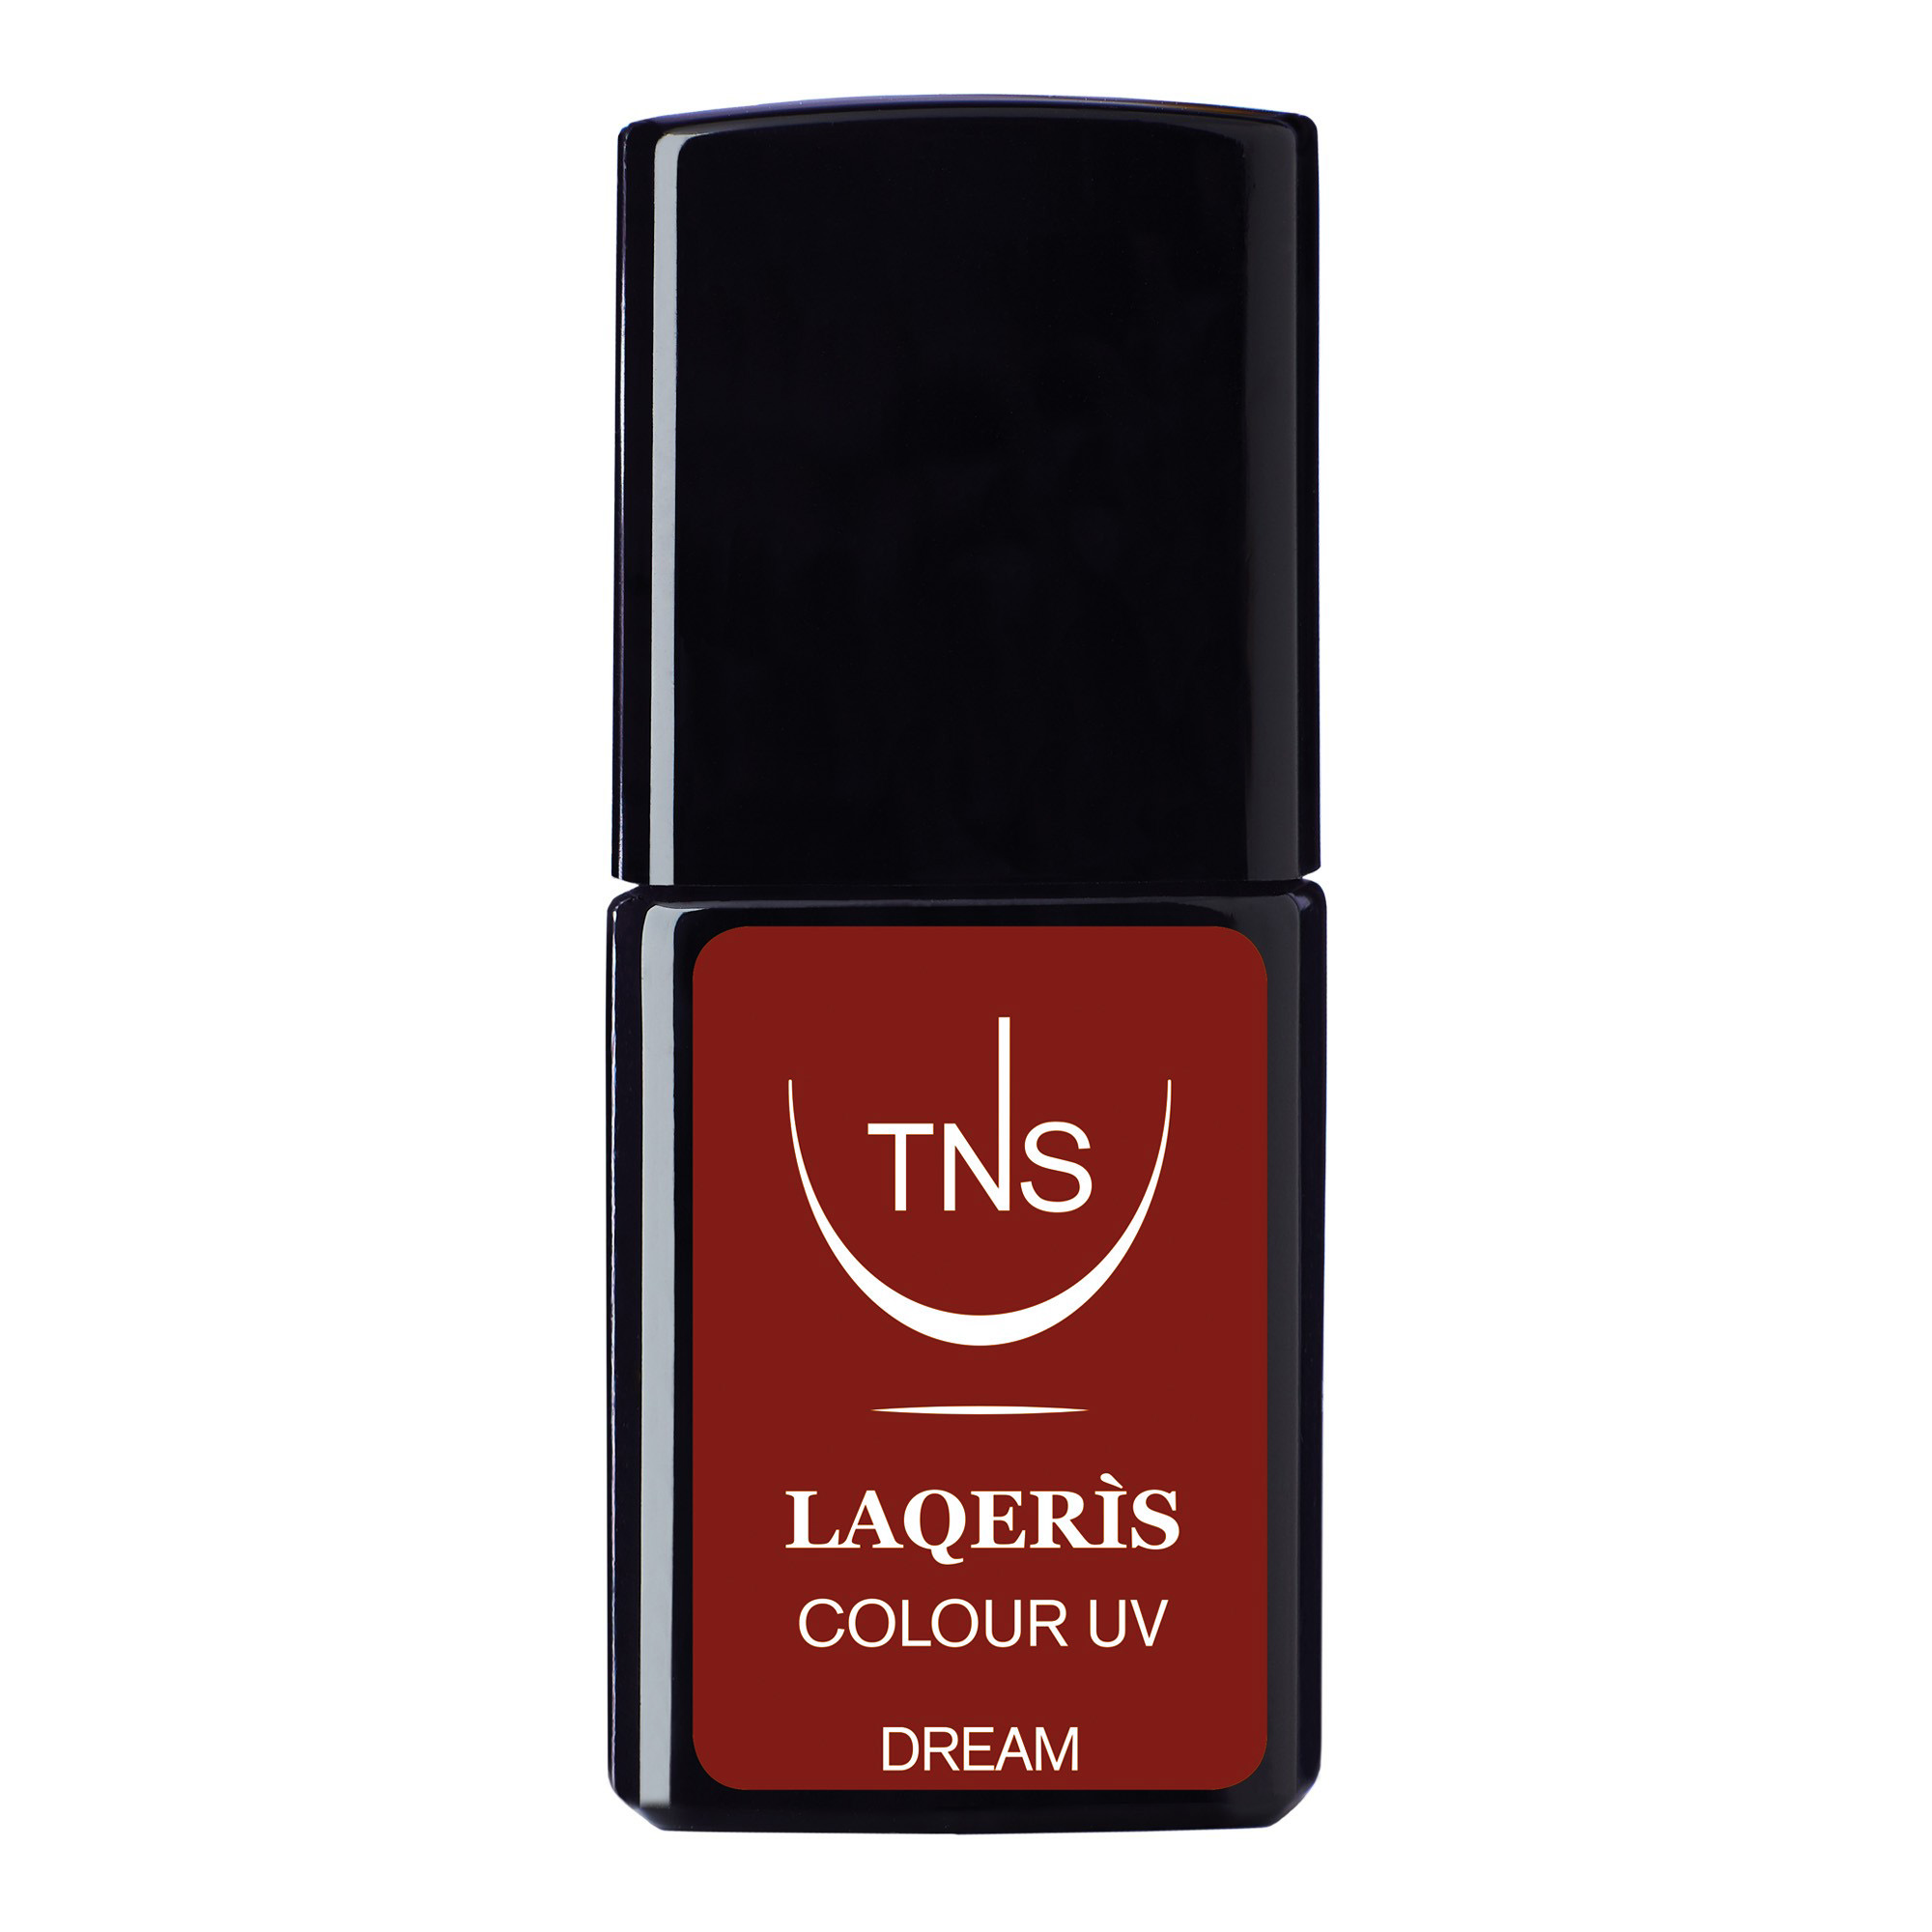 Semi-permanent nail polish bordeaux red Dream 10 ml Laqerìs TNS